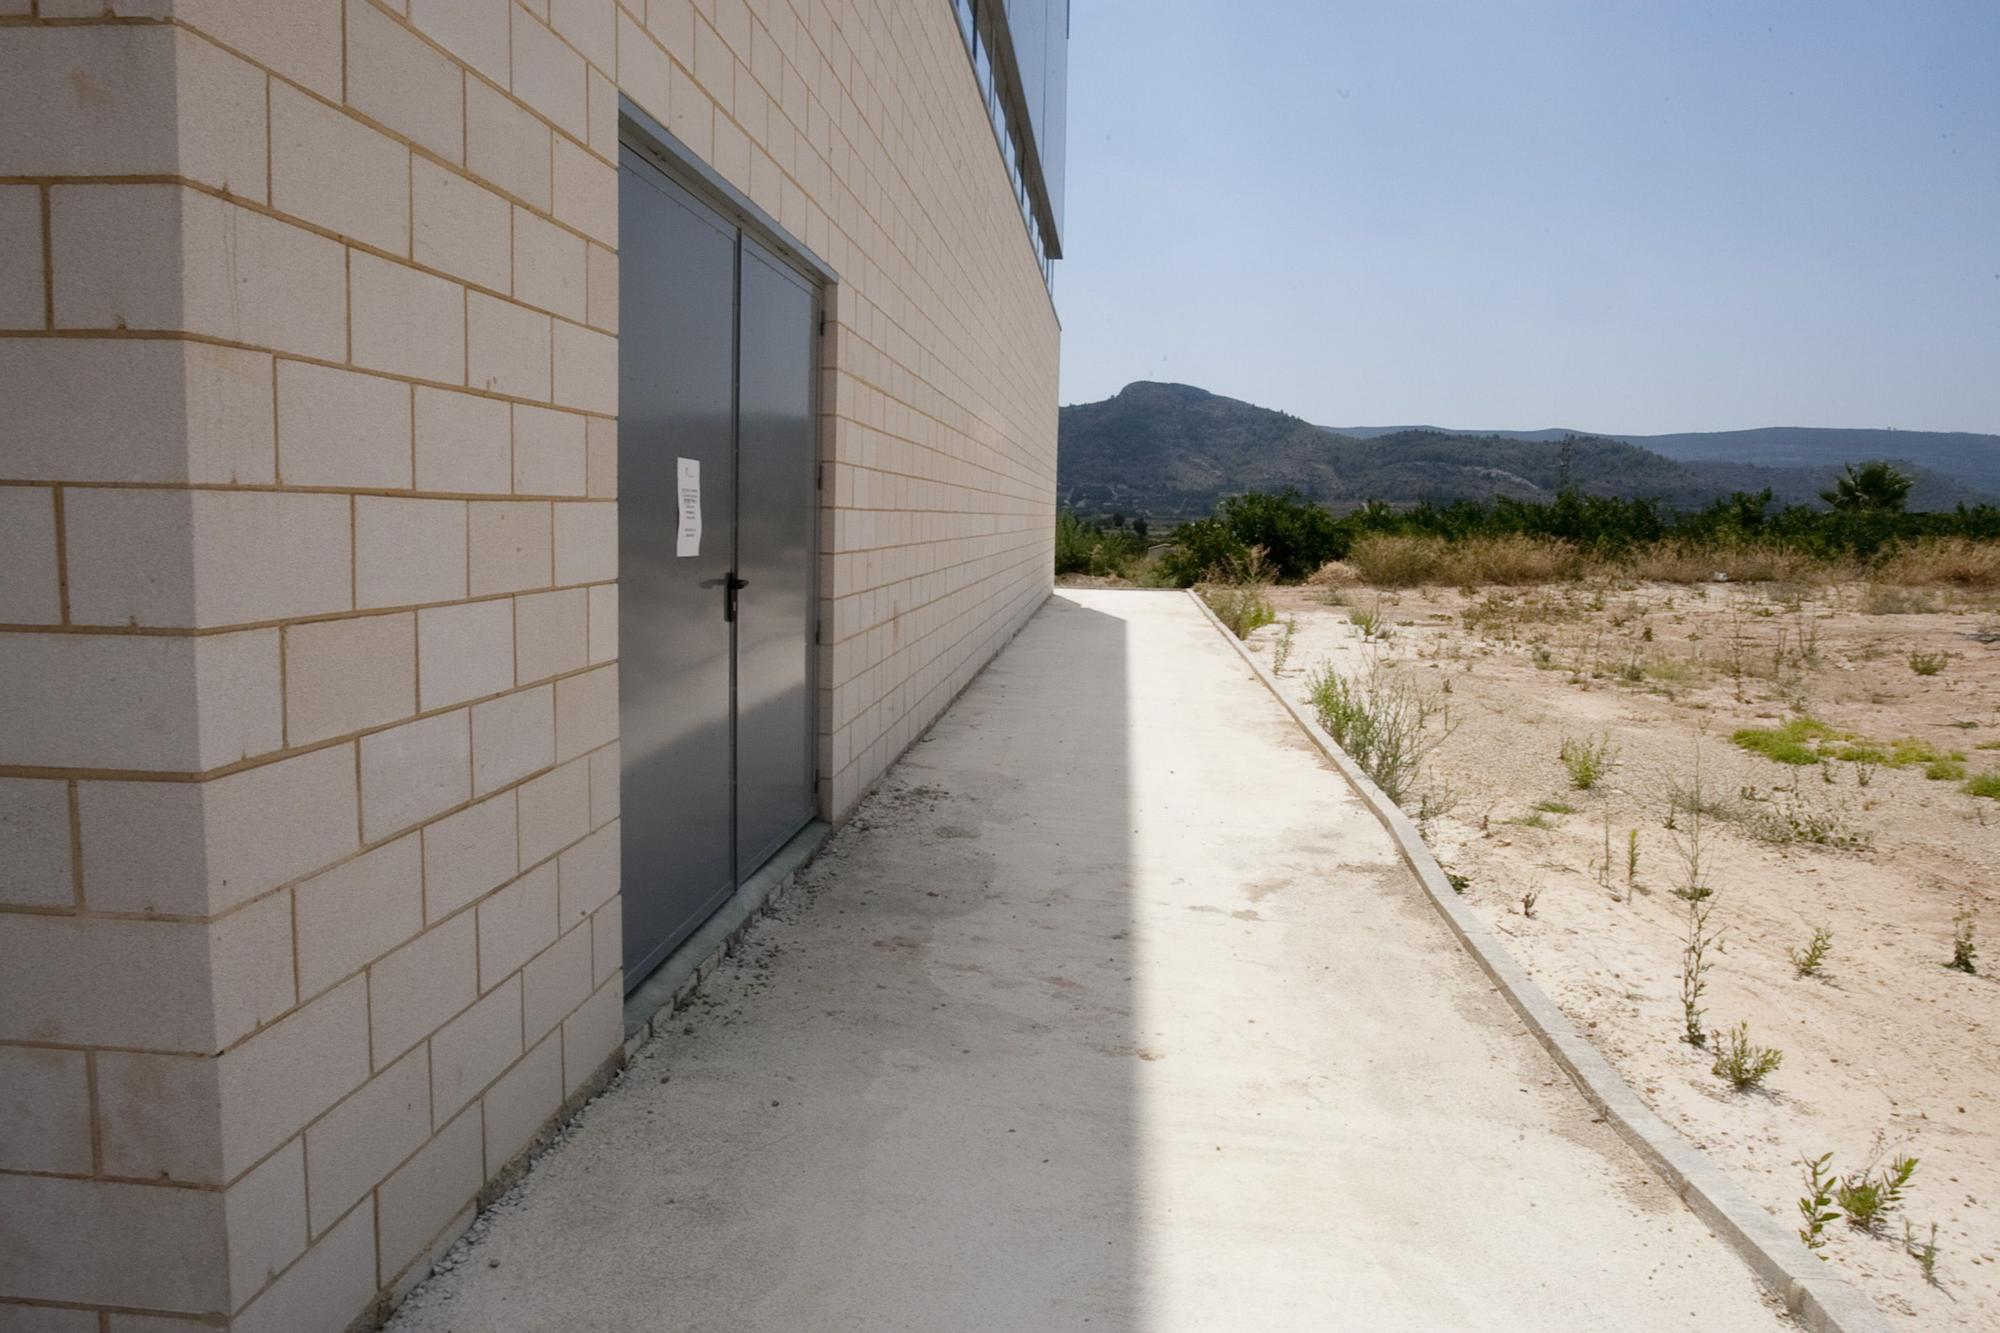 Así se inauguró en 2015 el pabellón en desuso que Cerdà quiere reactivar